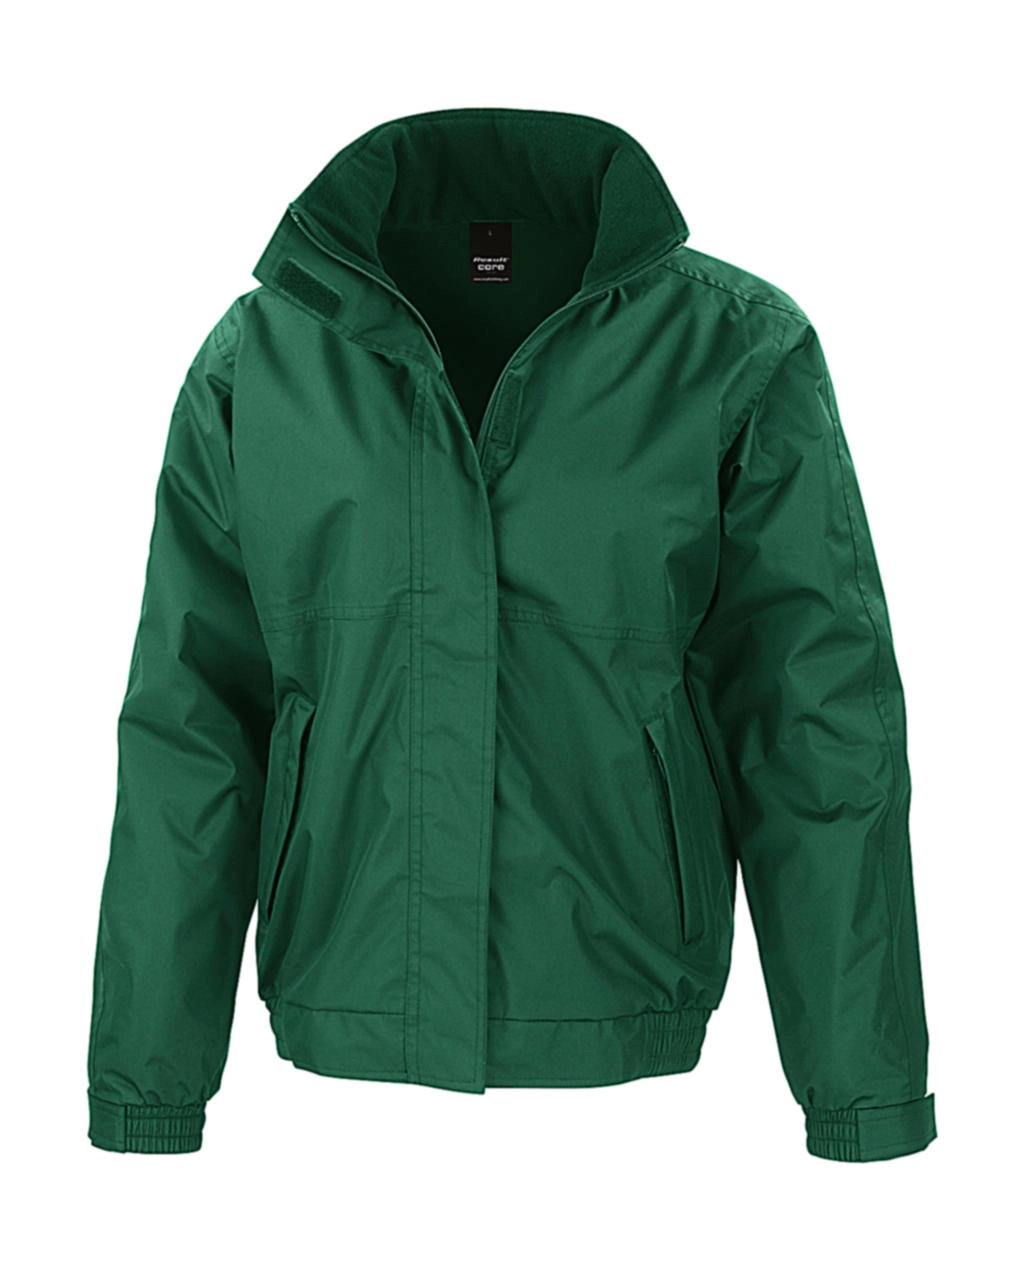 Channel Jacket zum Besticken und Bedrucken in der Farbe Bottle Green mit Ihren Logo, Schriftzug oder Motiv.